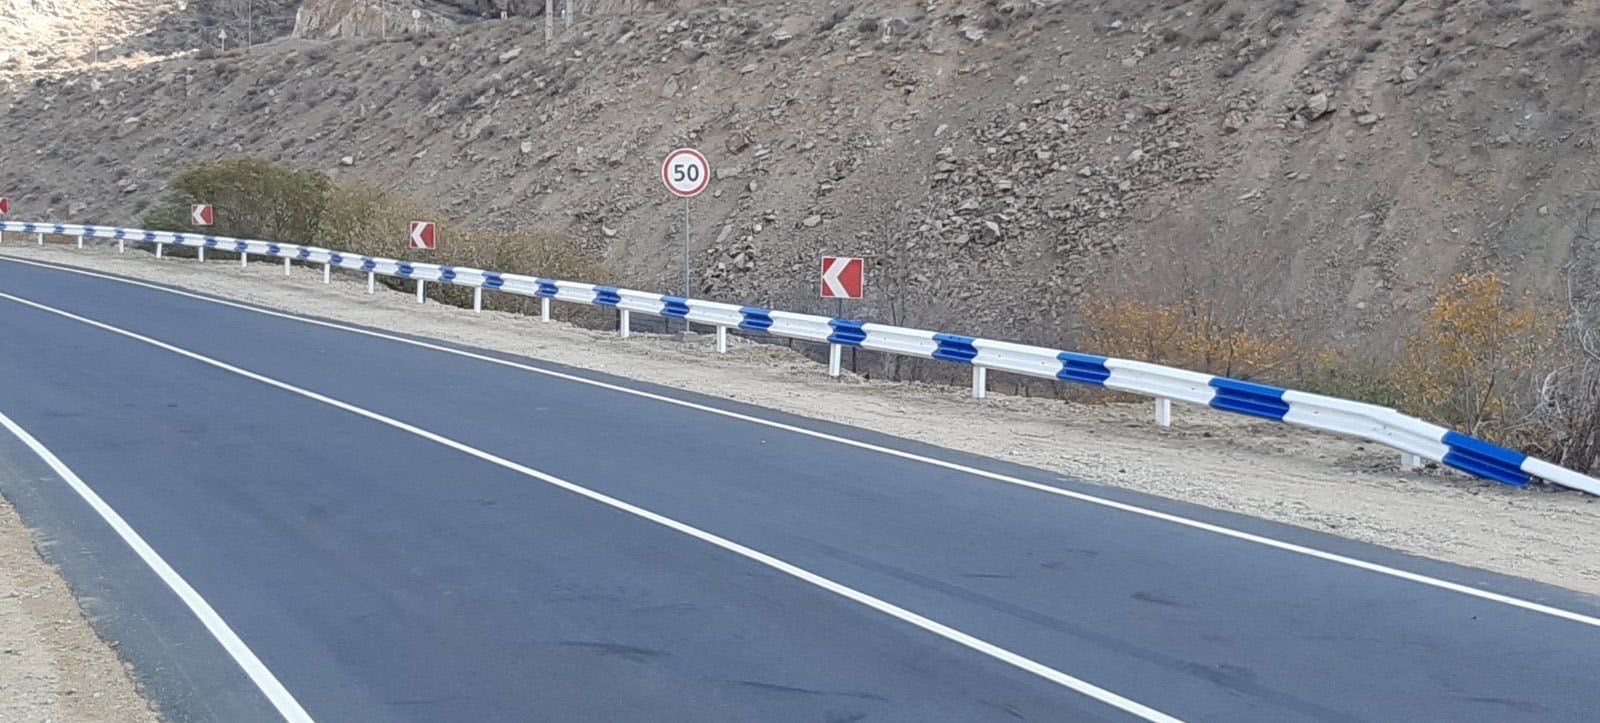 Երևան-Երասխ-Գորիս-Մեղրի-Իրանի սահման միջպետական ճանապարհի մի հատվածը հիմնանորոգվել է